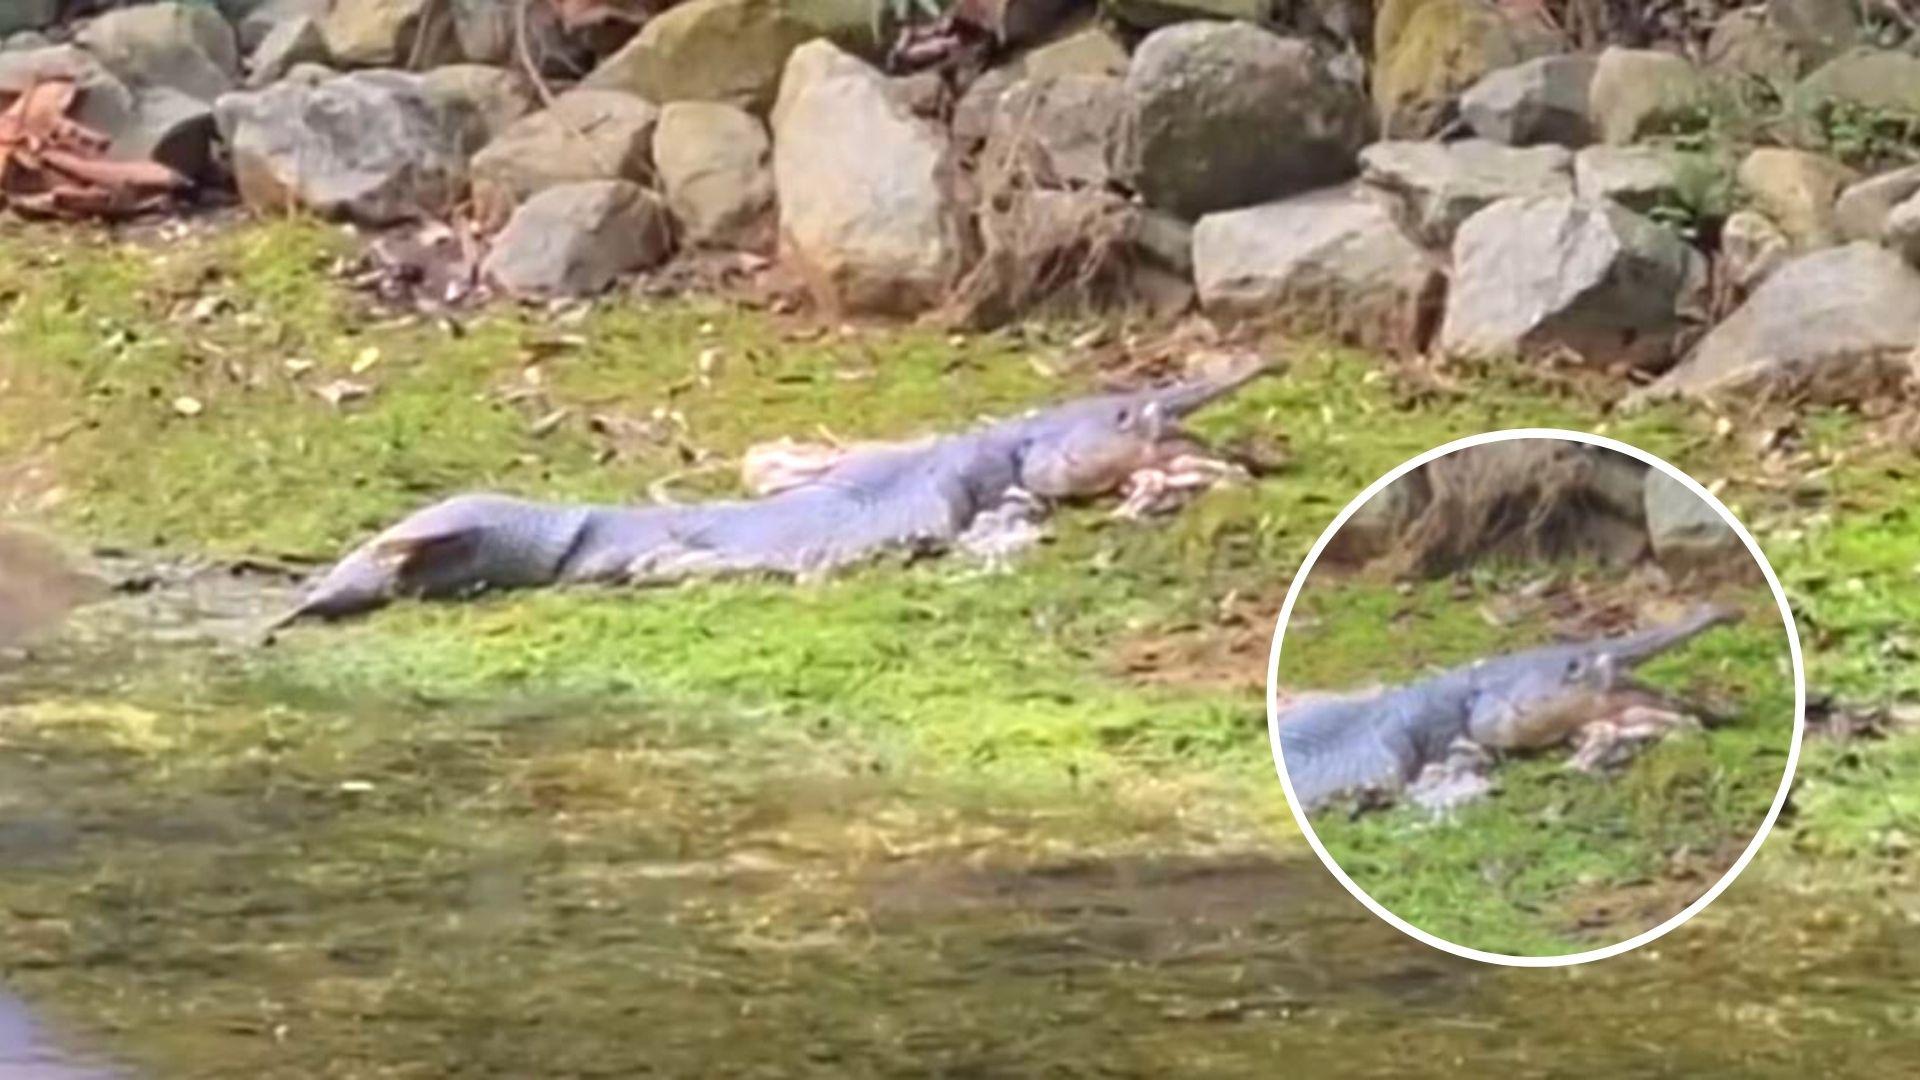 peste aligator mort pe malul unui rezervor din singapore